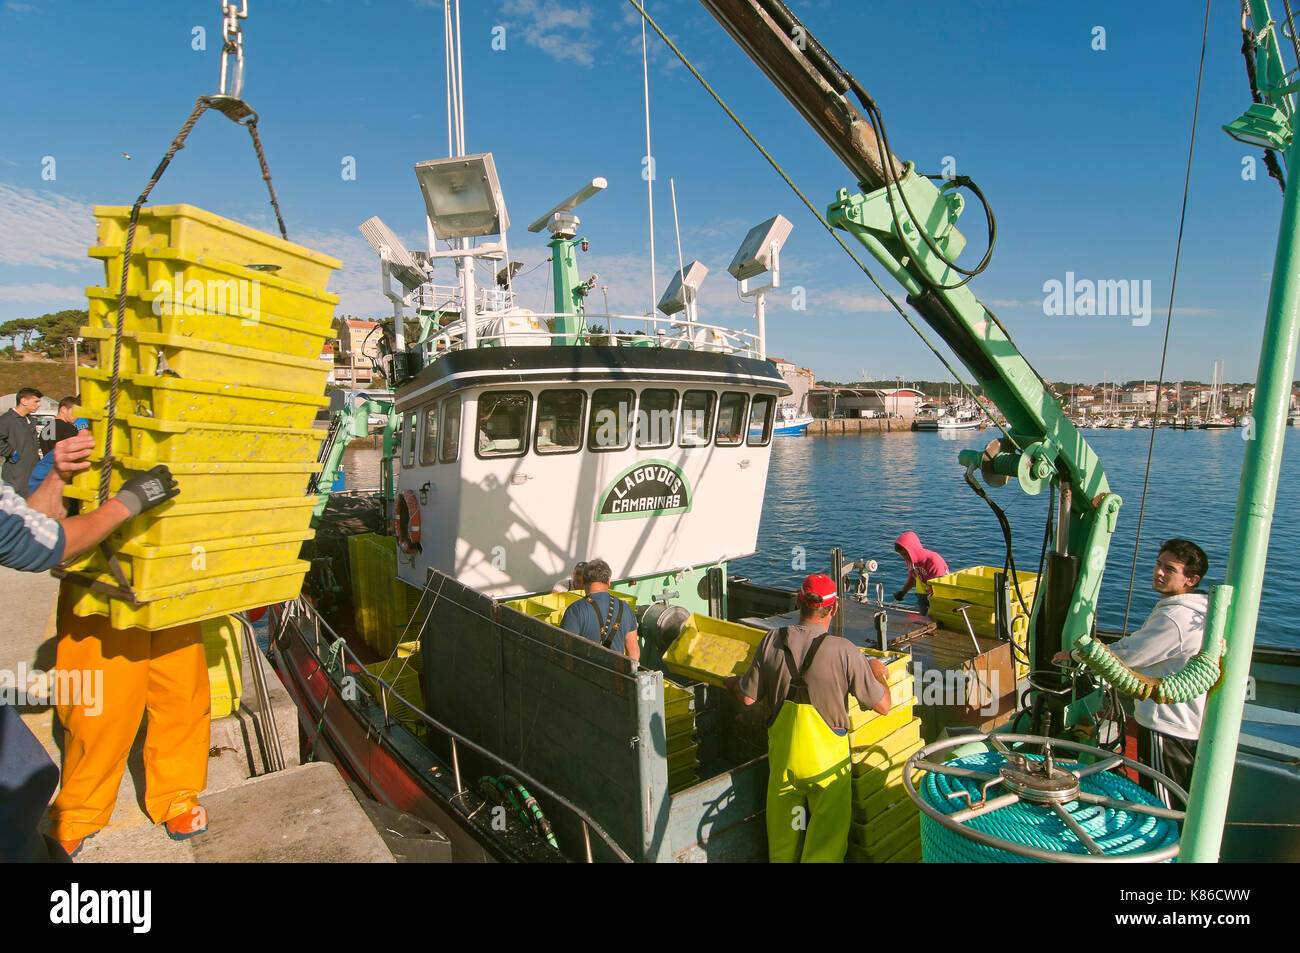 Barcos de pesca descargando cajas de peces, Camarinas, provincia de la Coruña, Región de Galicia, España, Europa Foto de stock